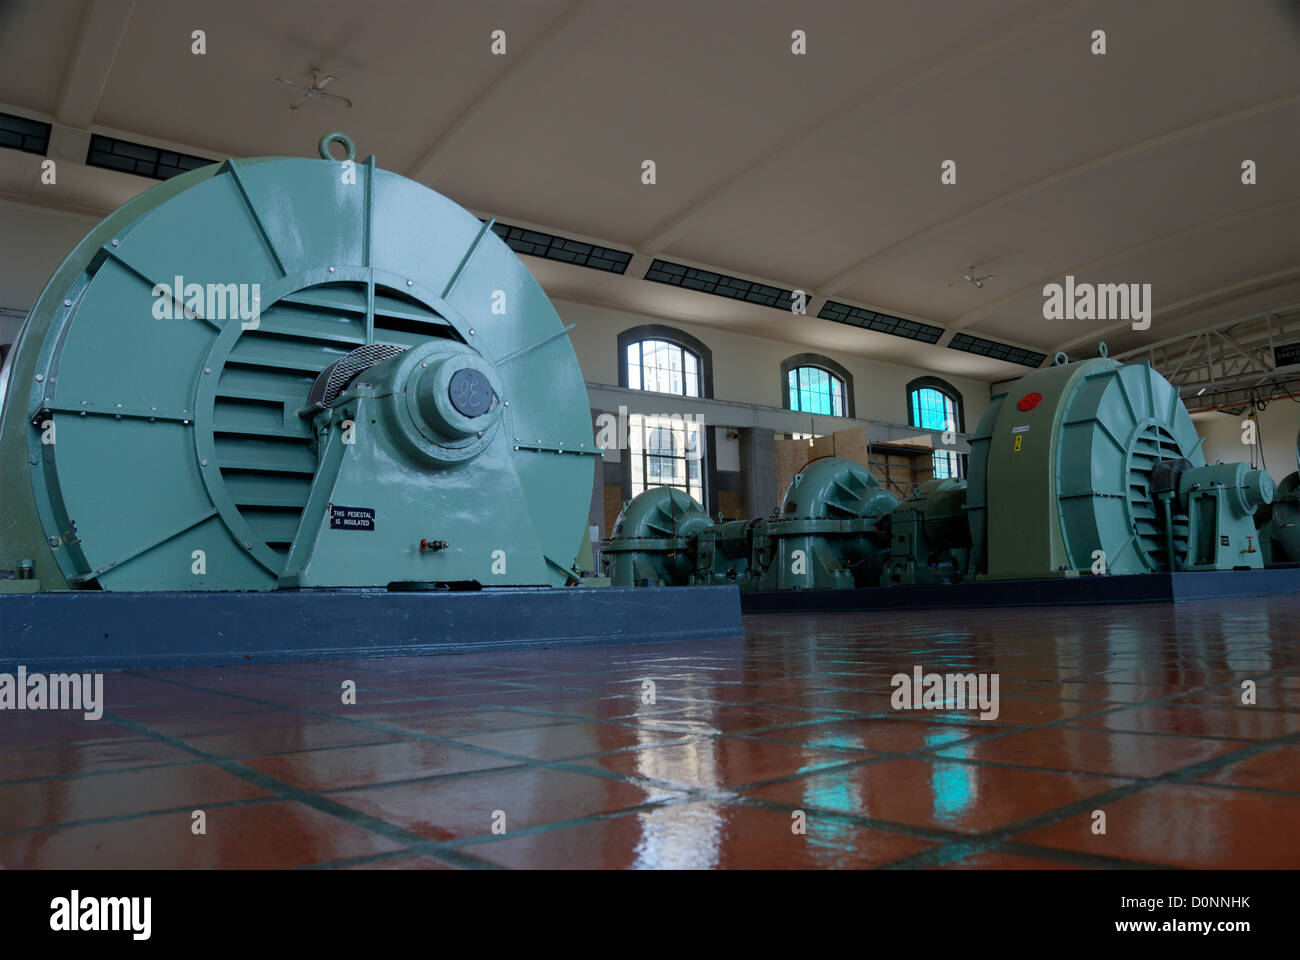 La massiccia General Electric turbopompe nella camera della pompa del r. c. harris impianto di trattamento delle acque a Toronto in Canada Foto Stock